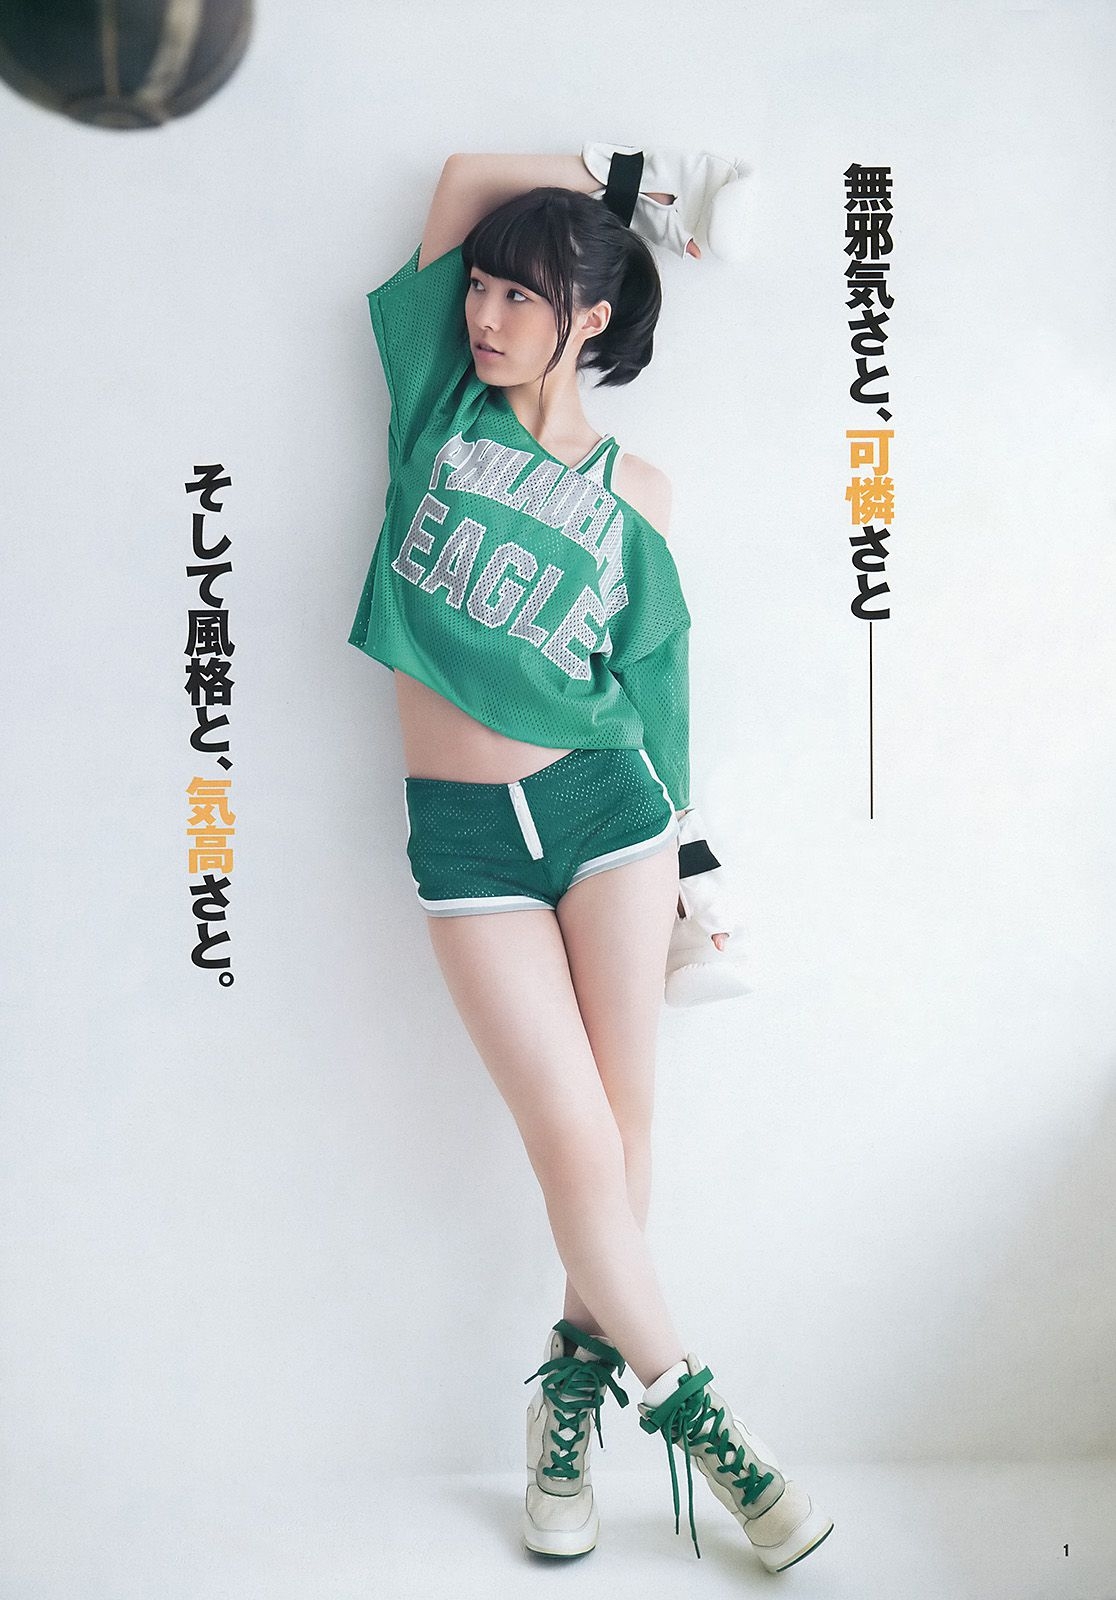 松井珠理奈 大和田南那 [Weekly Young Jump] 2014年No.01 写真杂志  第0张